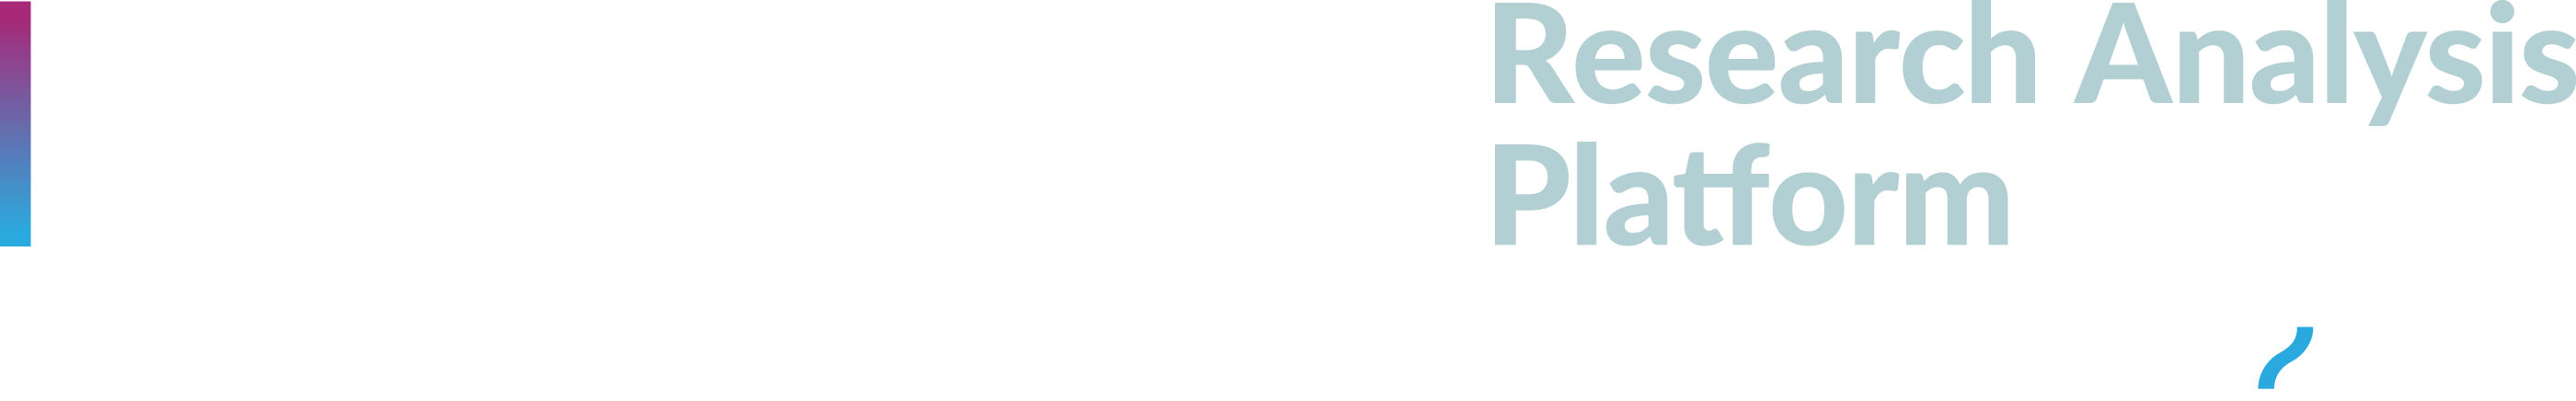 UKBiobank-RAP-DNAnexus-Logo-horizontal-RGB-KO